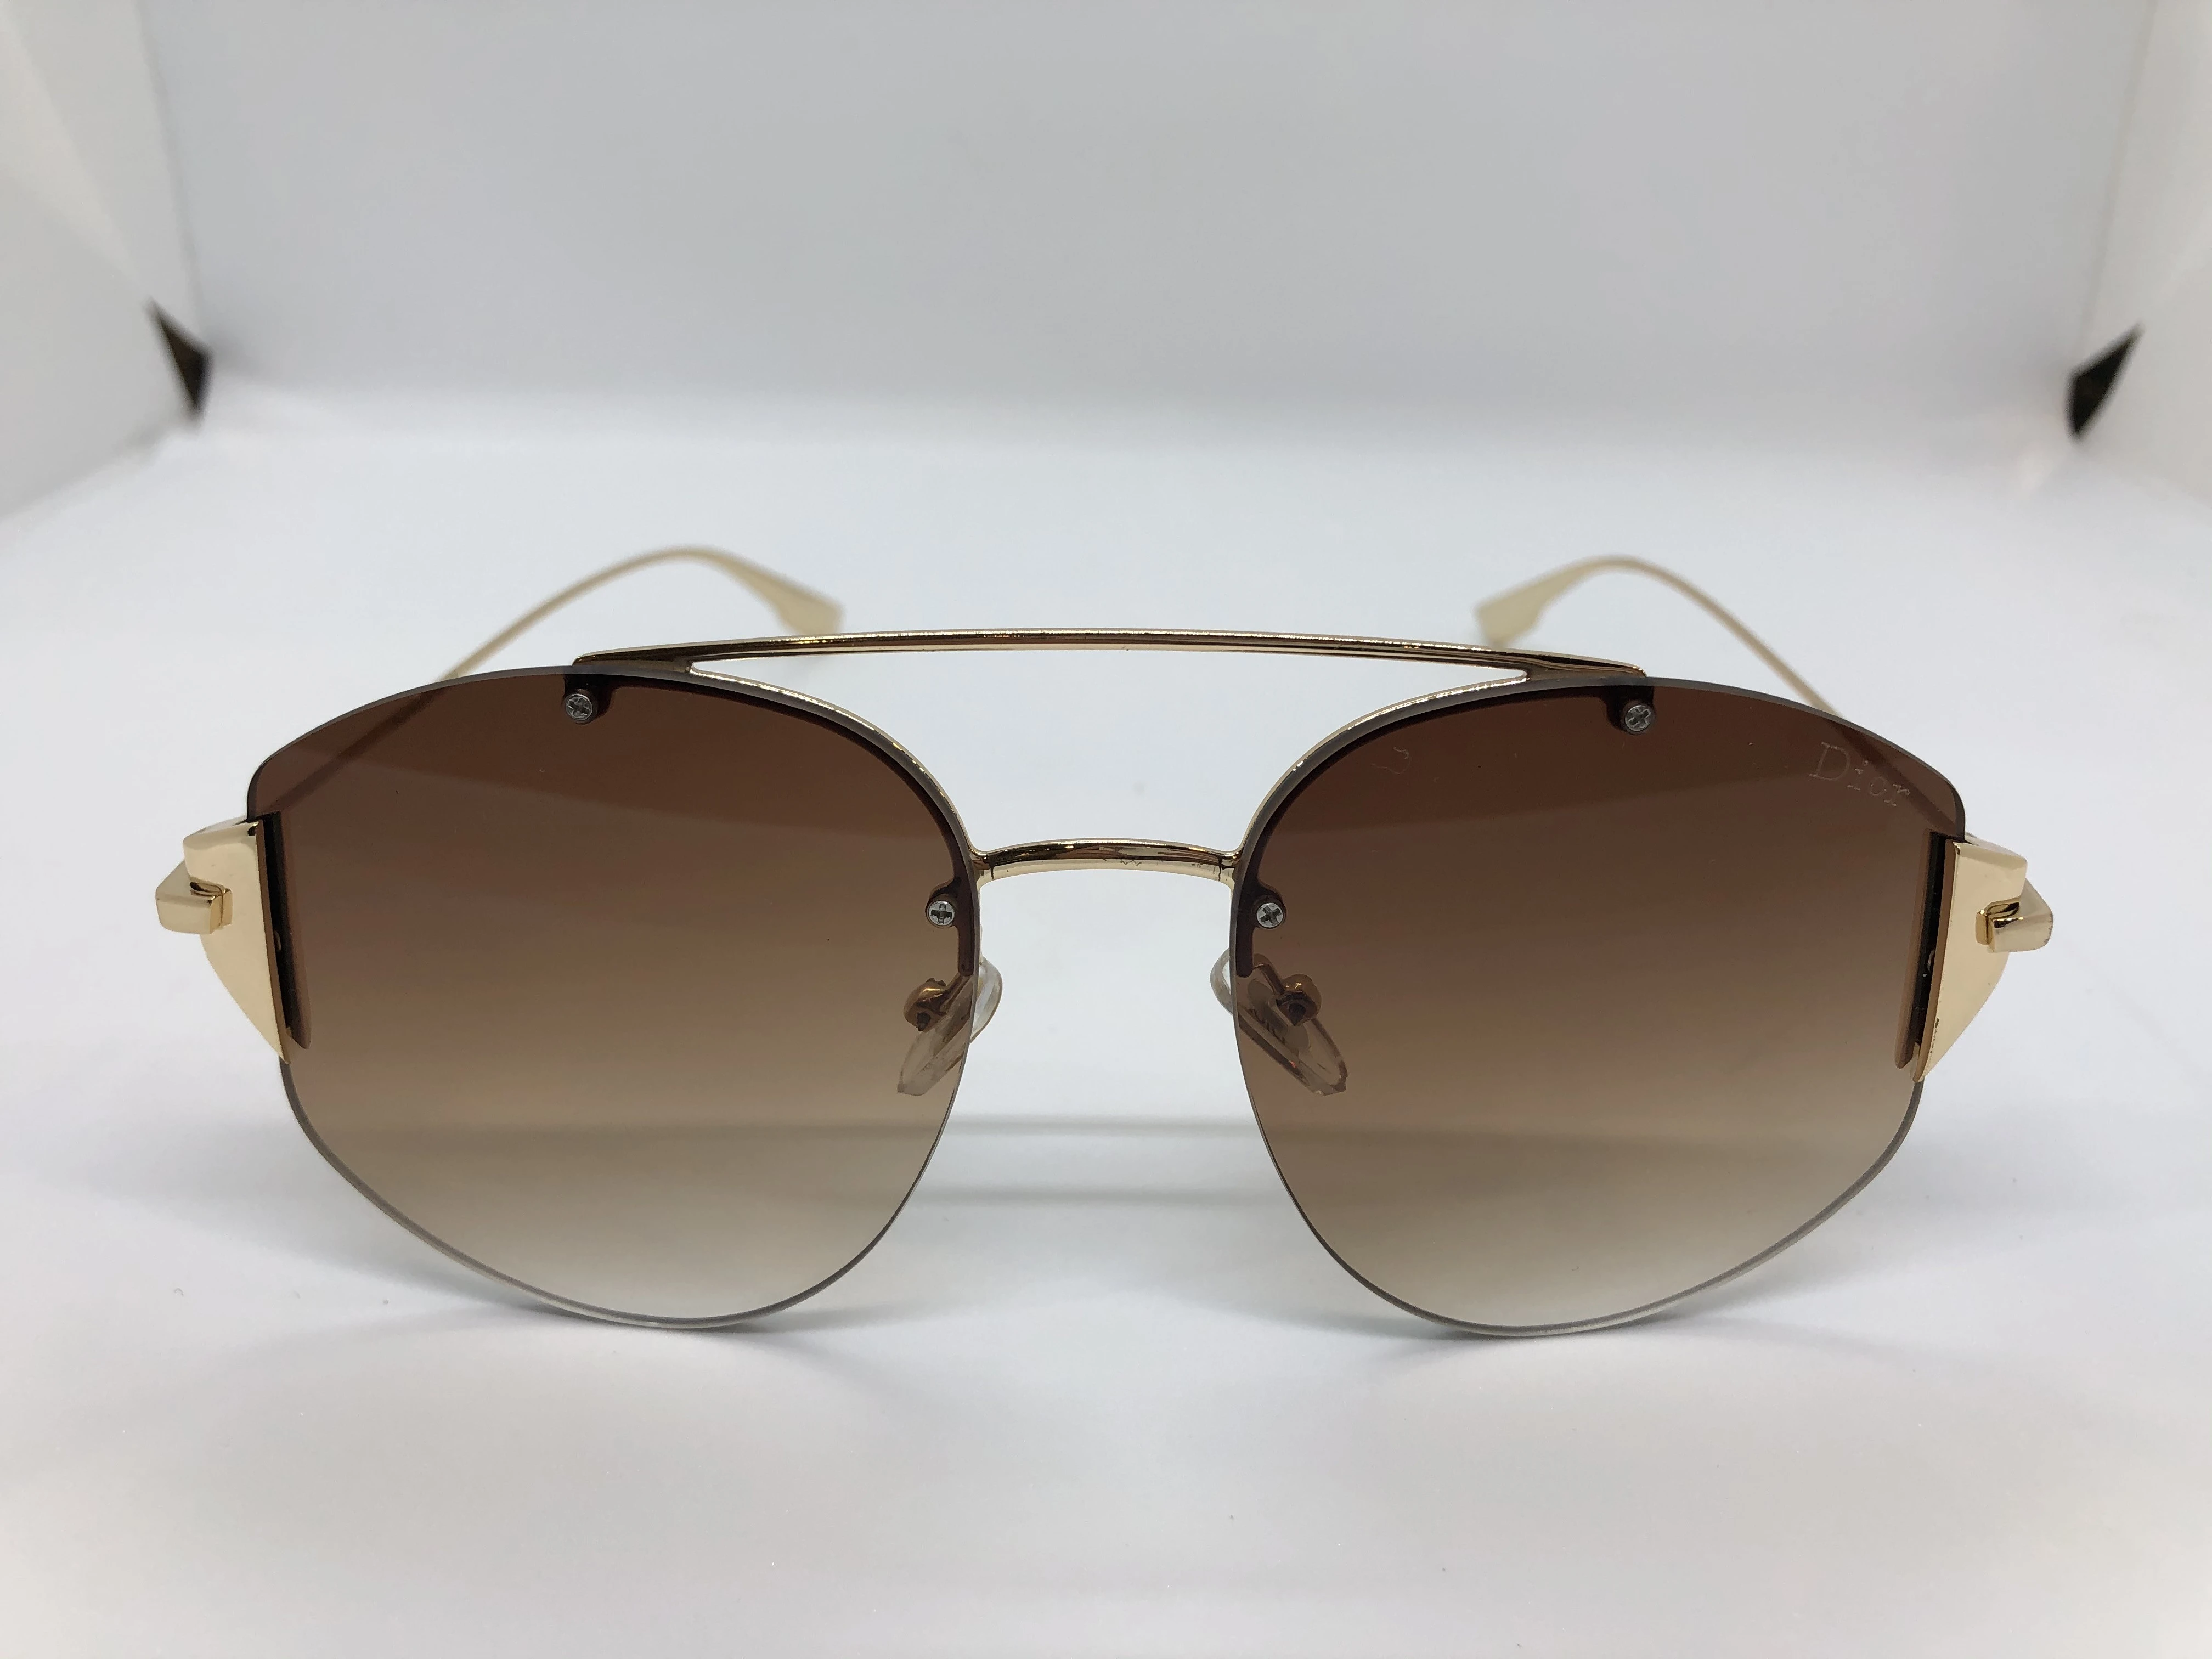 نظارة شمسية - من ديور- بدون اطار - وعدسات عسلي متدرجة - وزراع معدن ذهبي - حريمي